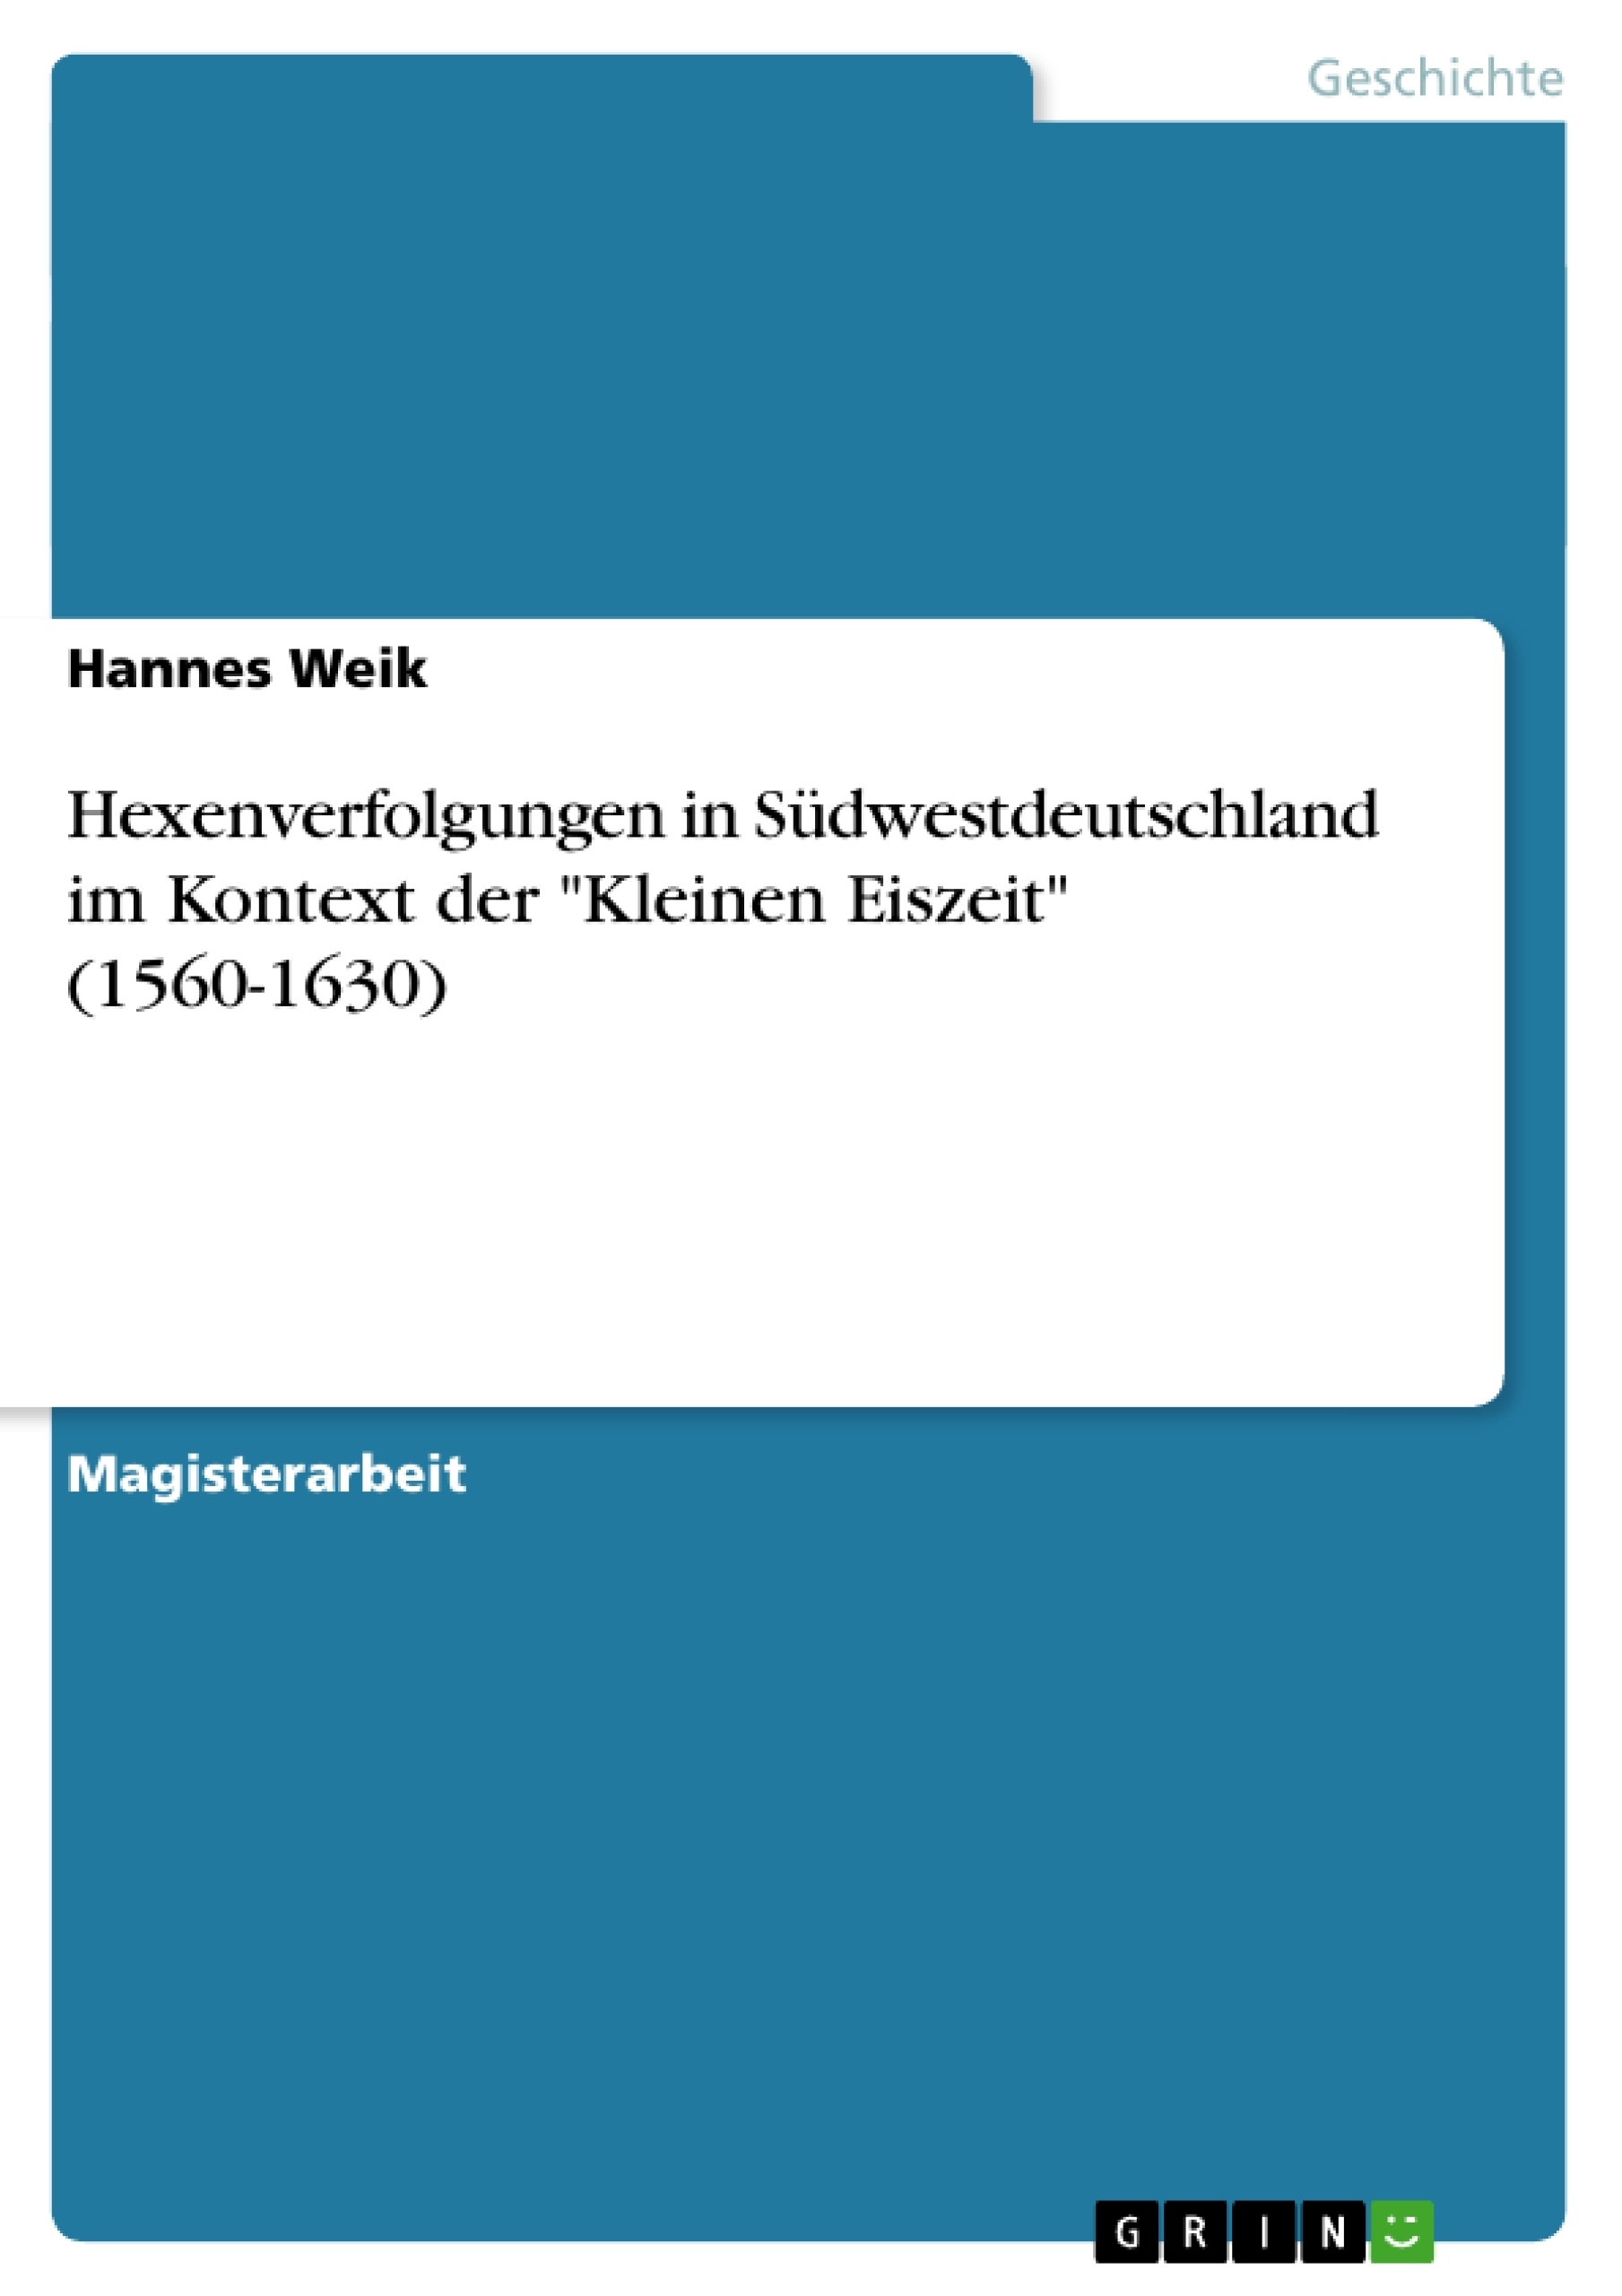 Title: Hexenverfolgungen in Südwestdeutschland im Kontext der "Kleinen Eiszeit" (1560-1630)